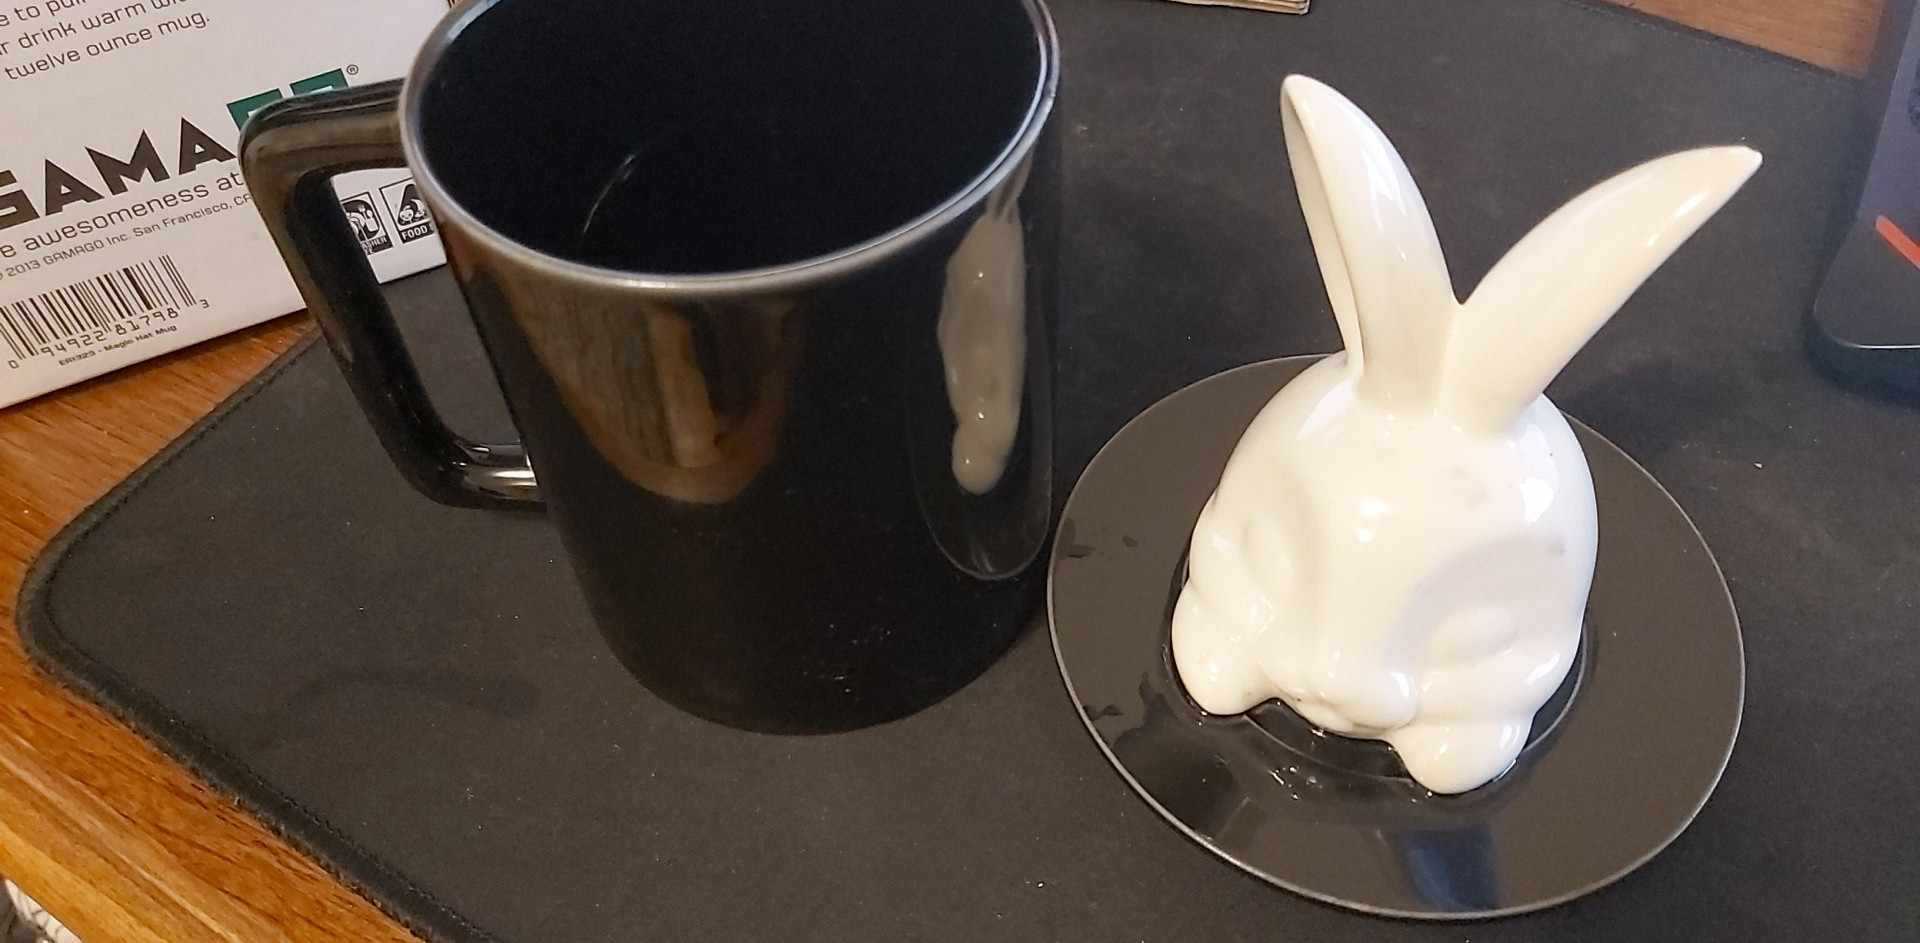 Cana cafea/ceai cu capac ceramic cu un iepure. Gama-Go Magic Hat Mug